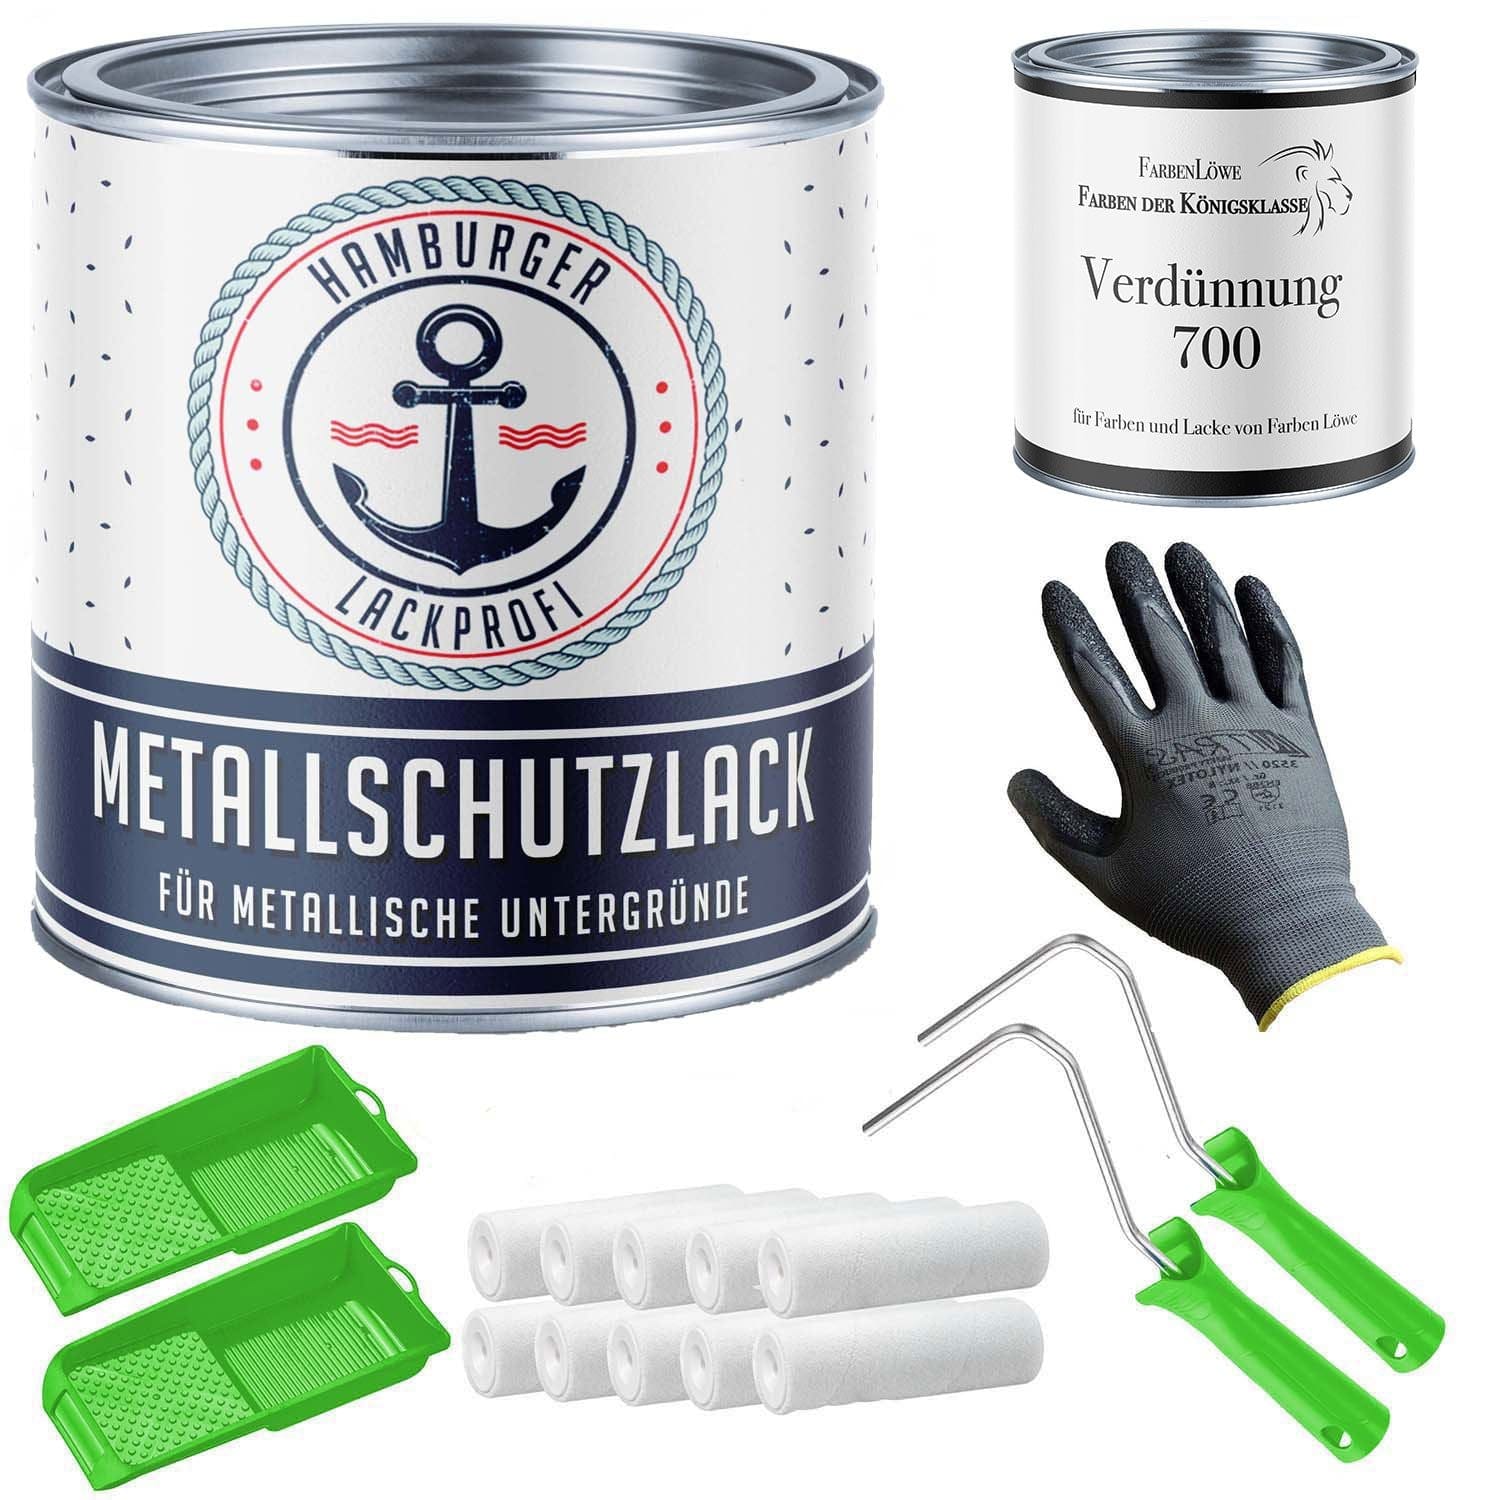 FARBENLÖWE Lacke & Beschichtungen Hamburger Lack-Profi Metallschutzlack in Minzgrün RAL 6029 mit Lackierset (X300) & Verdünnung (1 L) - 30% Sparangebot